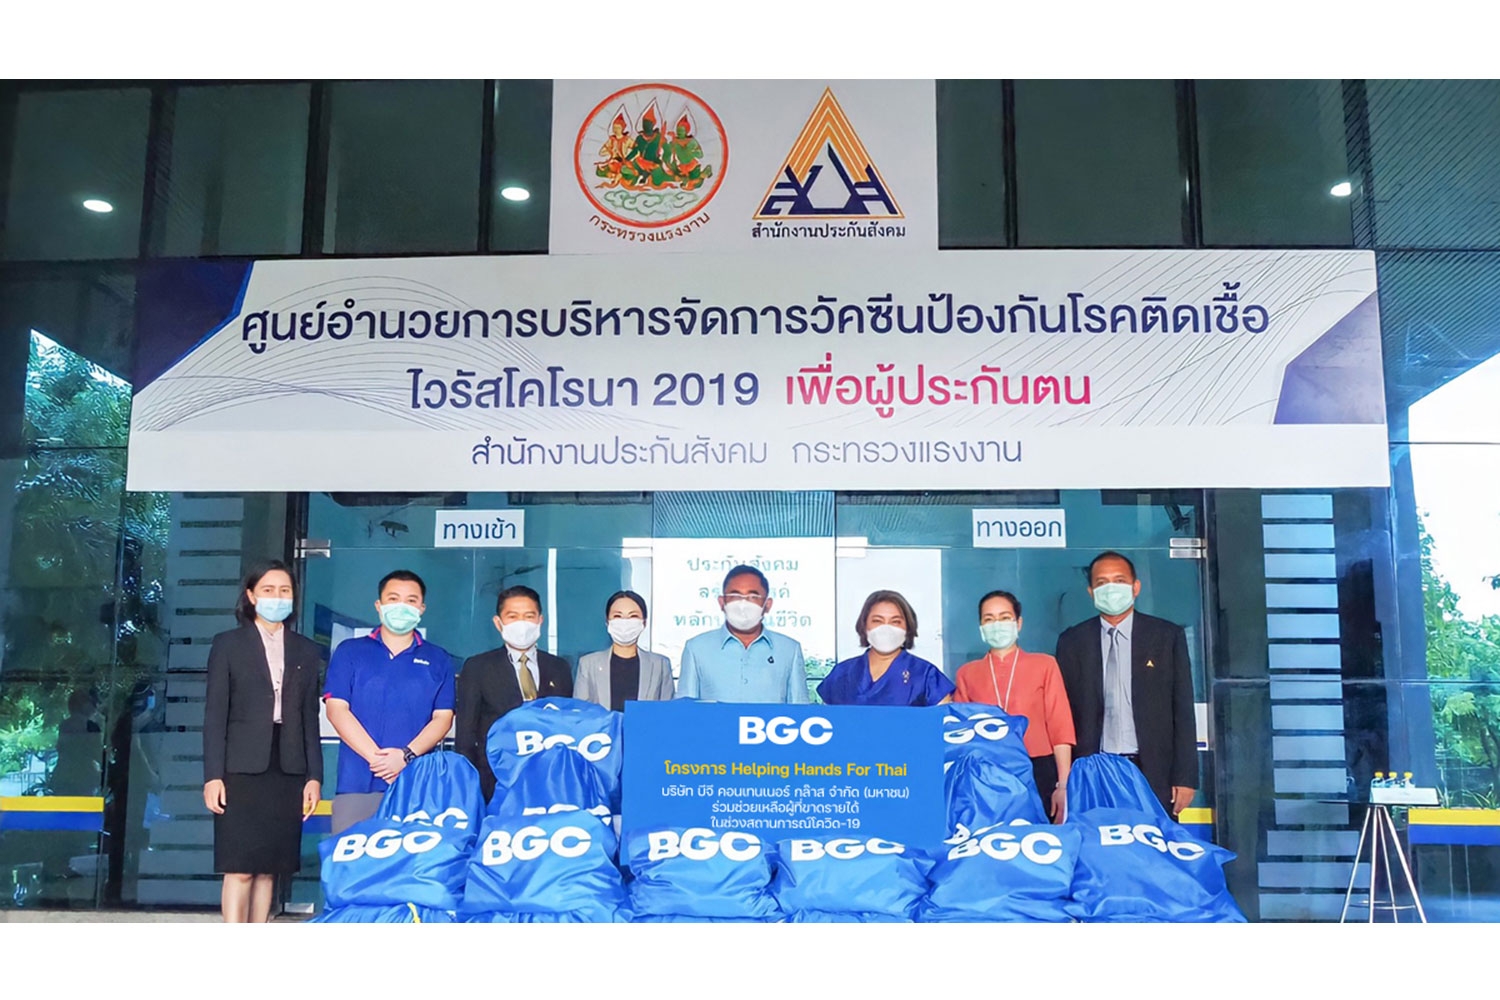 บีจีซี ผุดโครงการ Helping Hands For Thai ช่วยเหลือผู้ขาดรายได้ช่วงโควิด